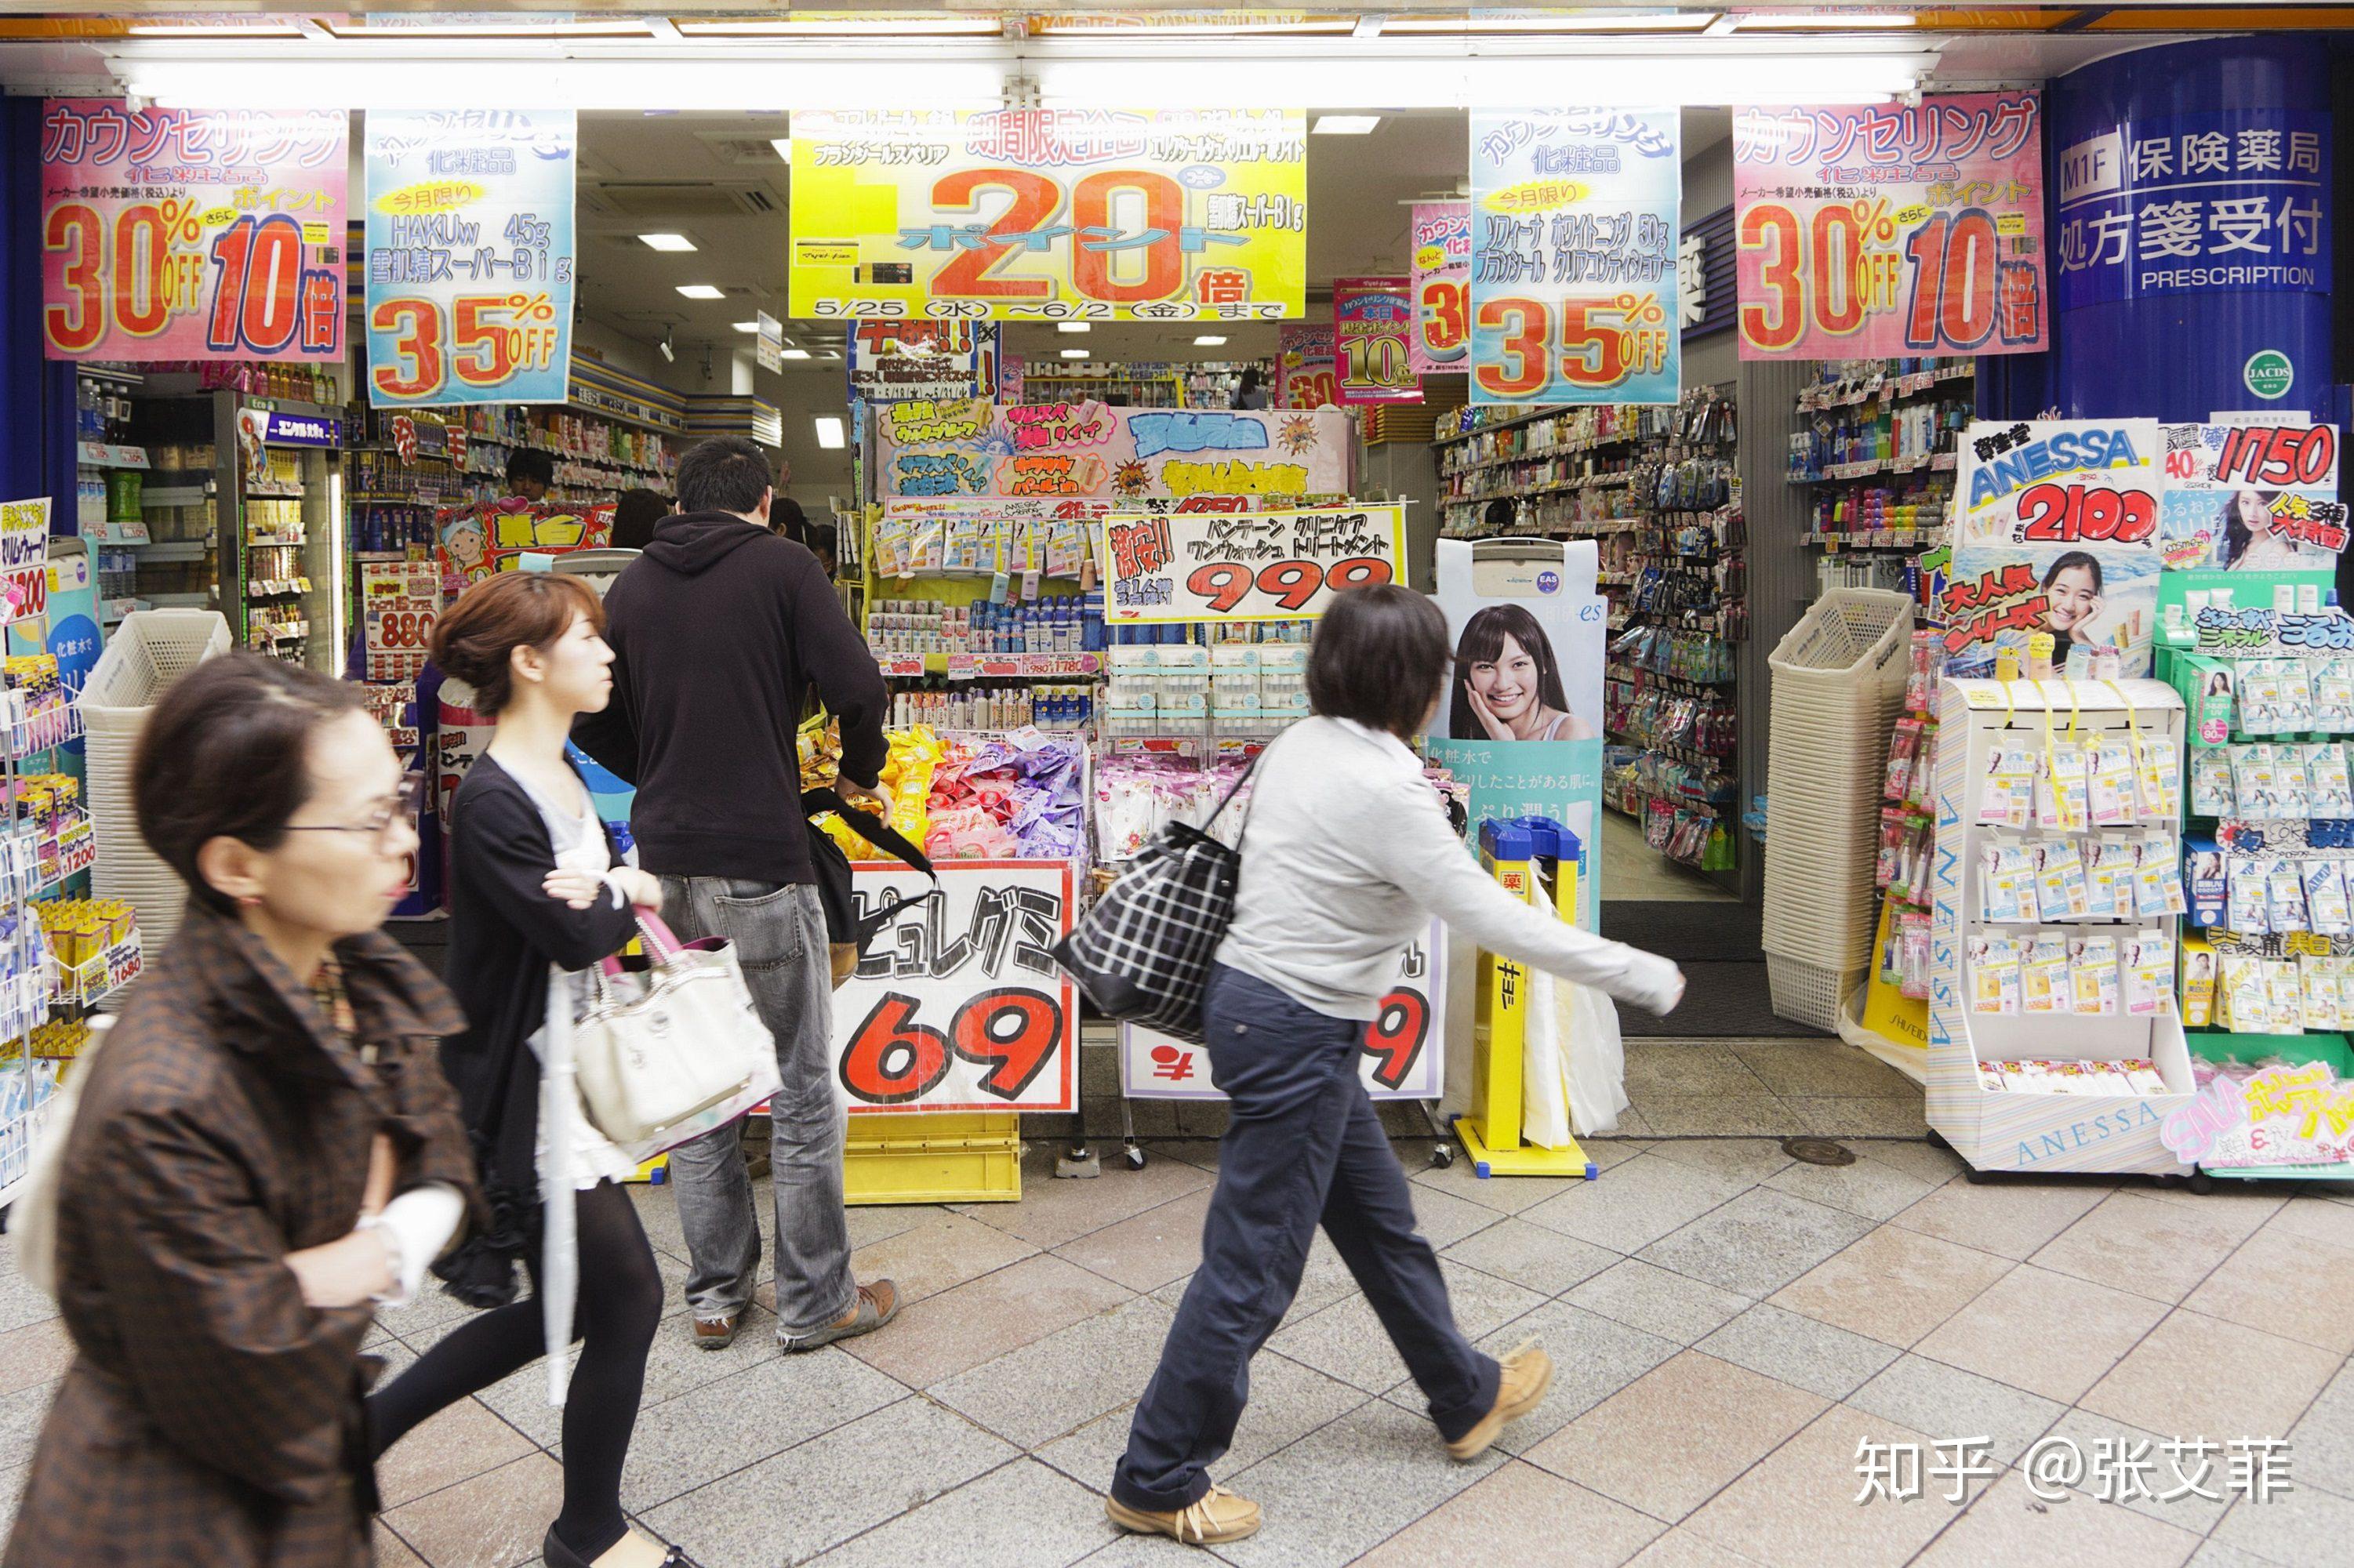 在日本买化妆品时那些常见的药妆店及省钱攻略 - 日息 - 一起了解不一样的日本